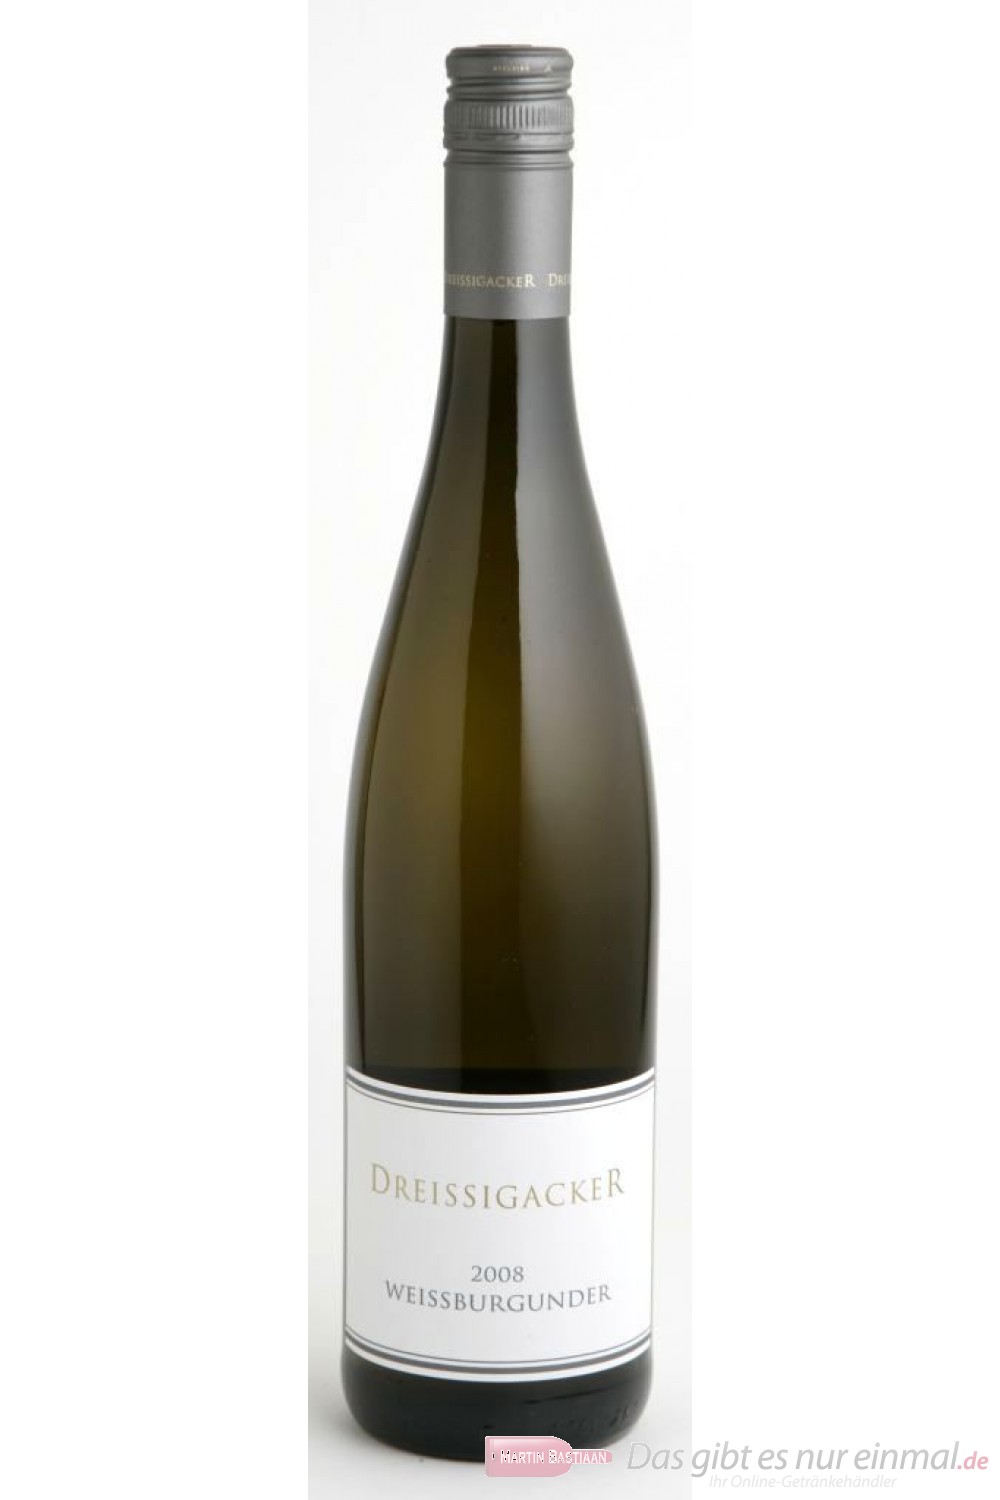 Dreissigacker Weissburgunder Weißwein Qba trocken 2010 12,5% 0,75l Flasche